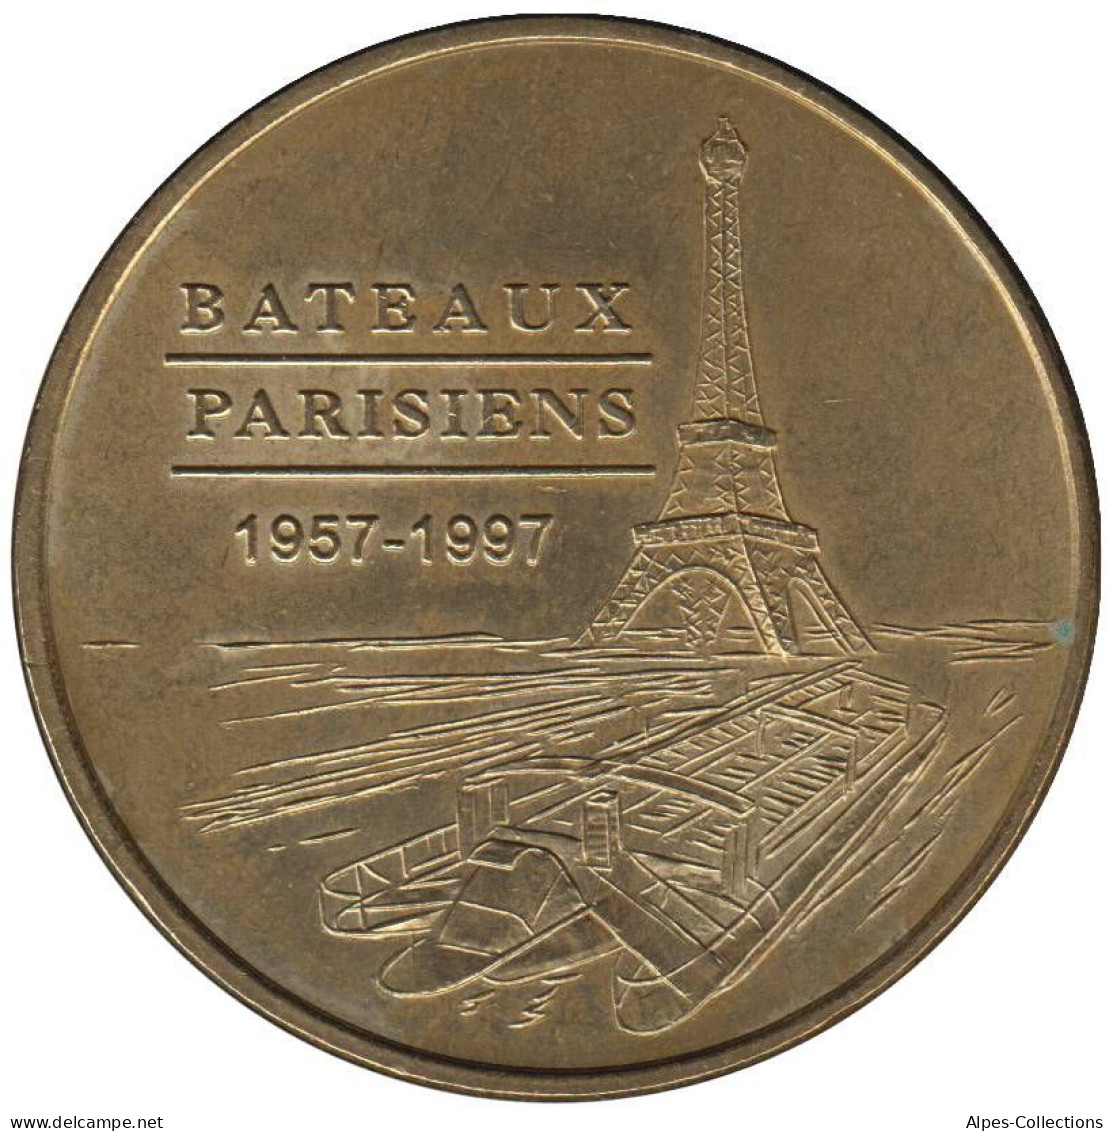 75-0251 - JETON TOURISTIQUE MDP - Bateaux Parisiens - 1957-1997 - 1998.1 - Undated